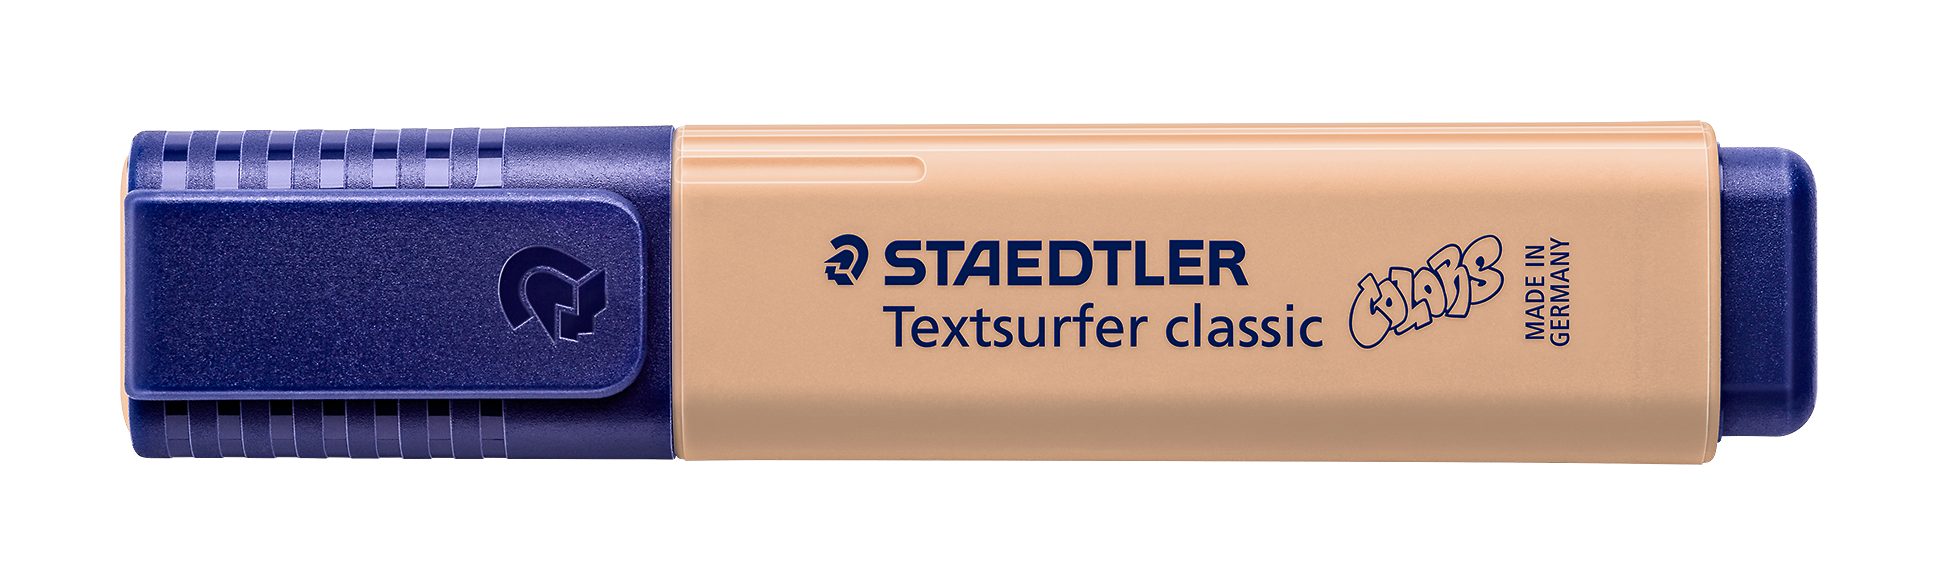 364 Textsurfer C-450 INK Marker JET sand classic colors STAEDTLER Leuchtstift, SAFE